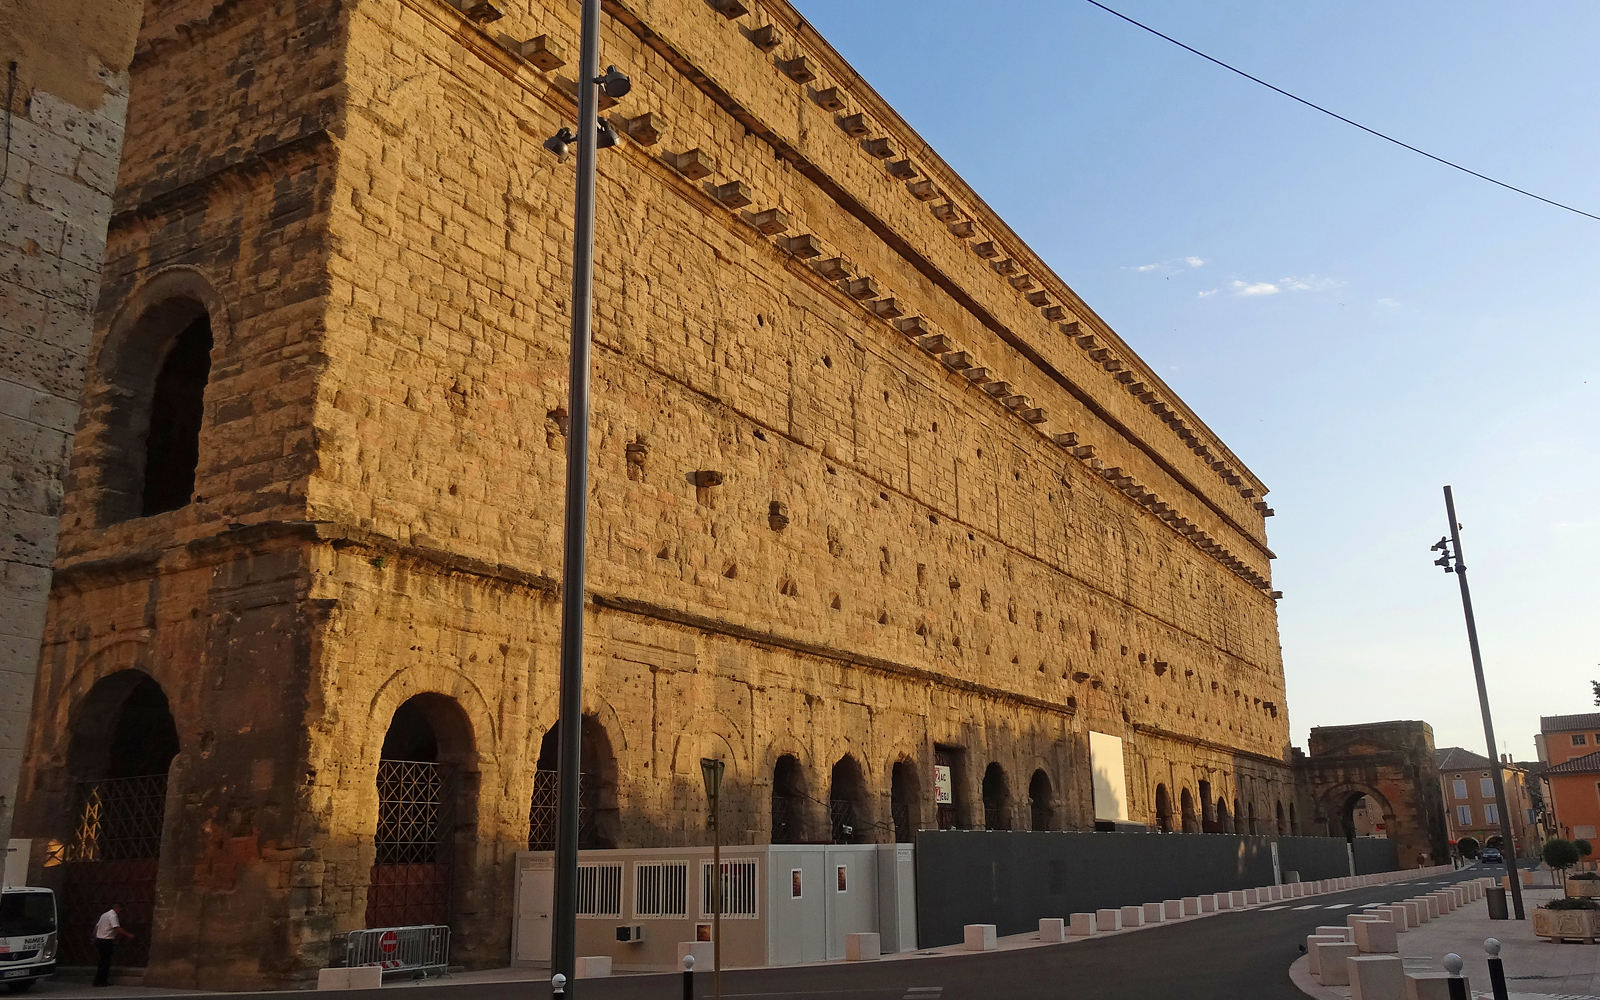 世界遺産「オランジュのローマ劇場とその周辺及び凱旋門」、ルイ14世が絶賛したと伝わるテアトルムのファサード外壁